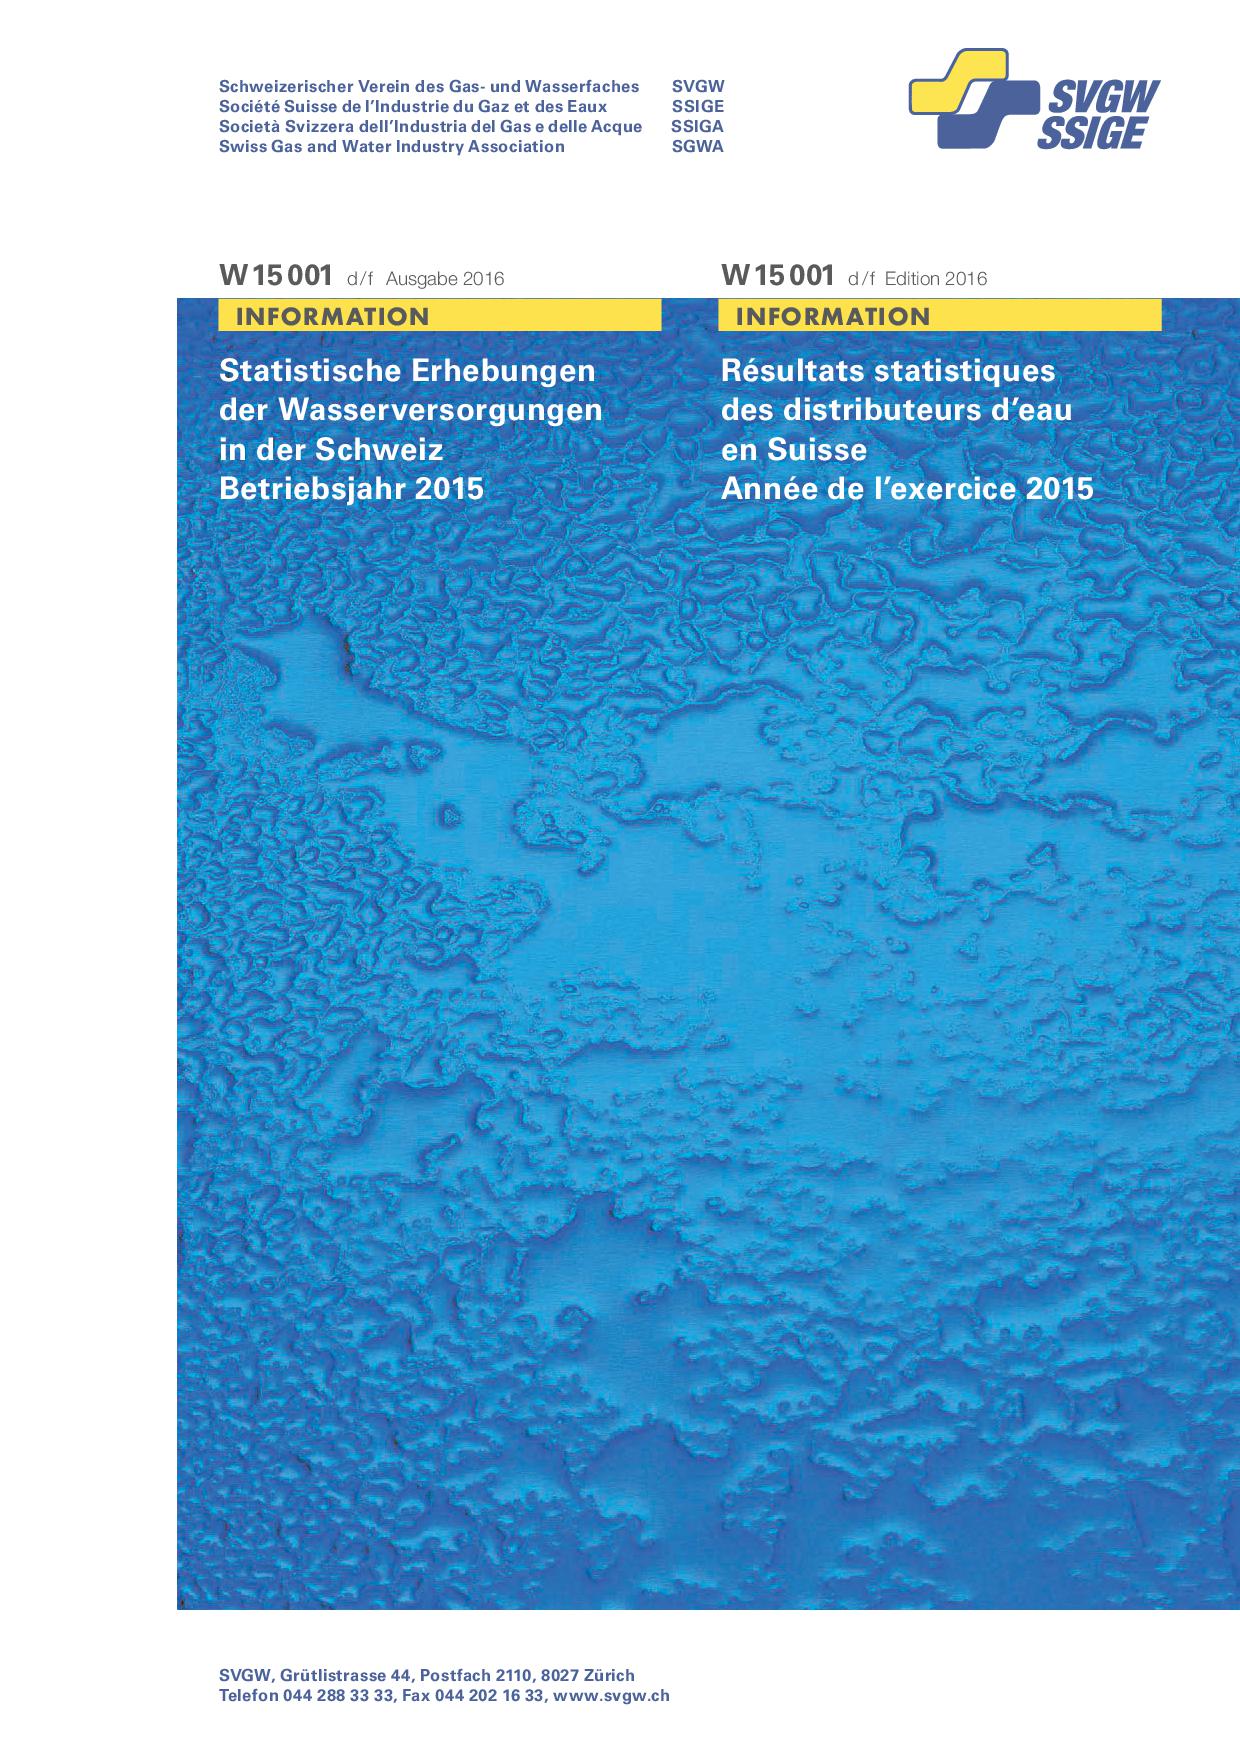 W15001 d/f Wasserstatistik 2016 (Betriebsjahr 2015) (erweiterte Ausgabe) (1)